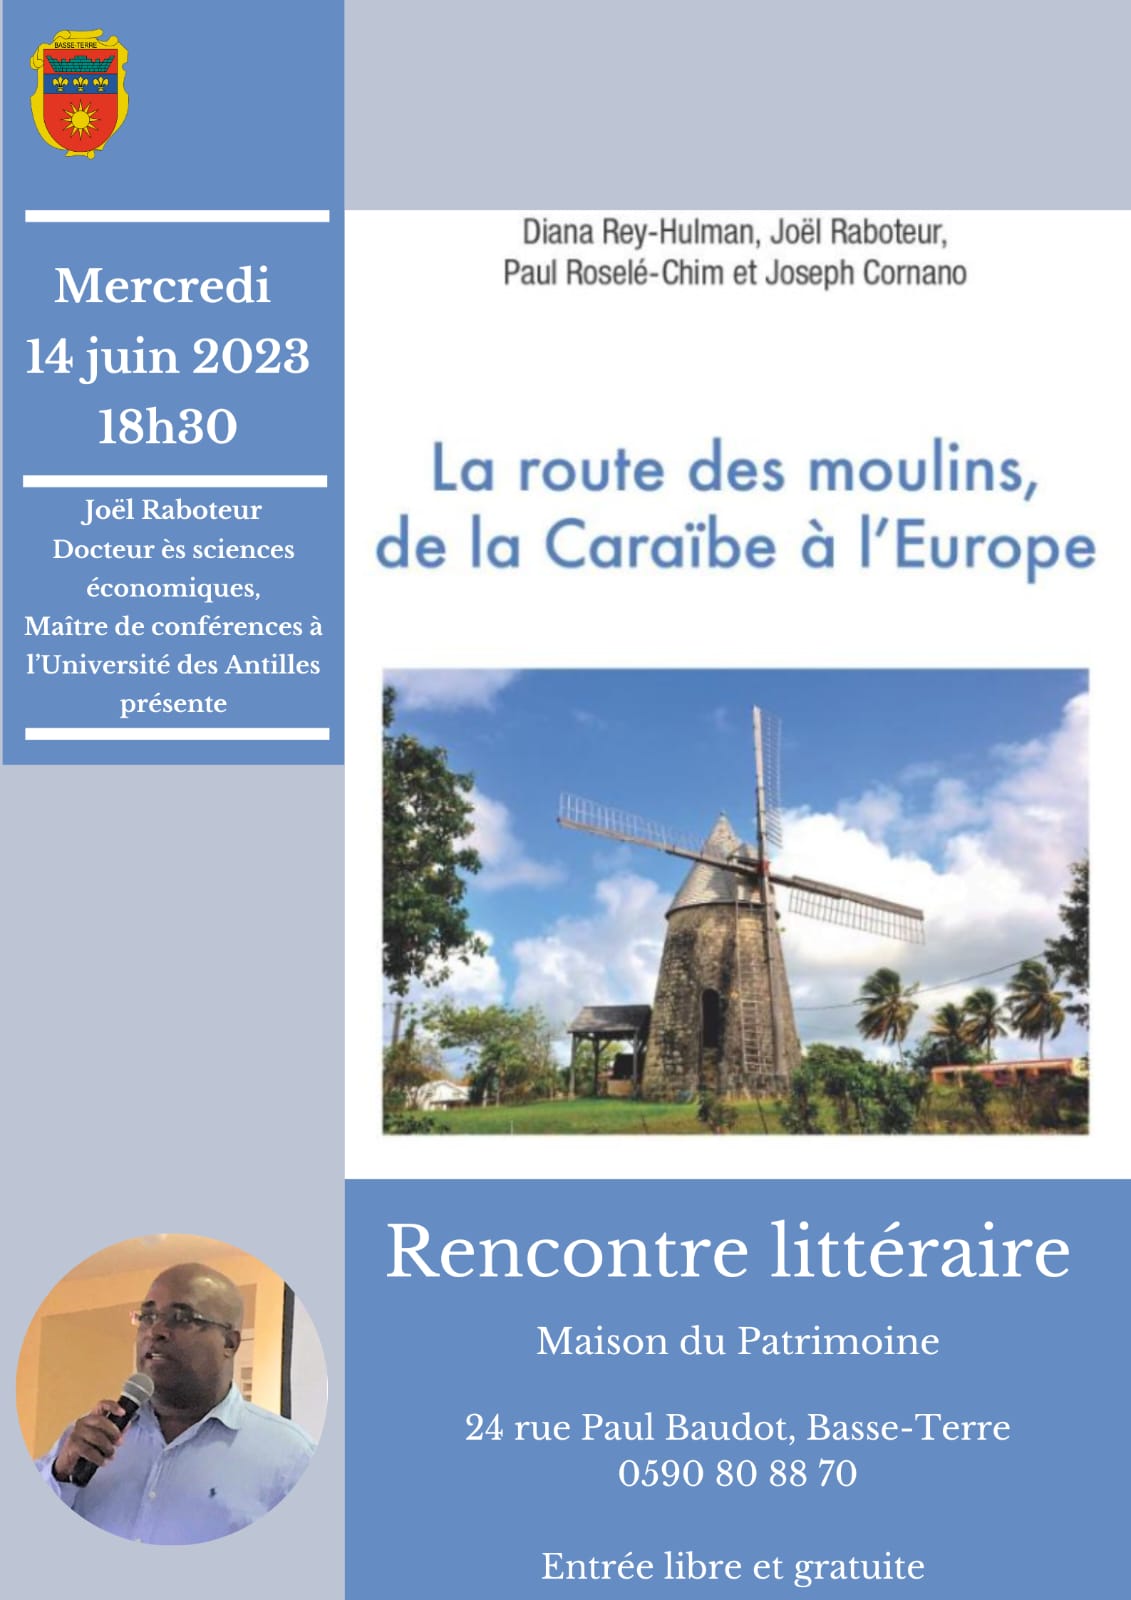 Rencontre littéraire autour de l'ouvrage "La route des moulins, de la Caraïbe à l'Europe" 